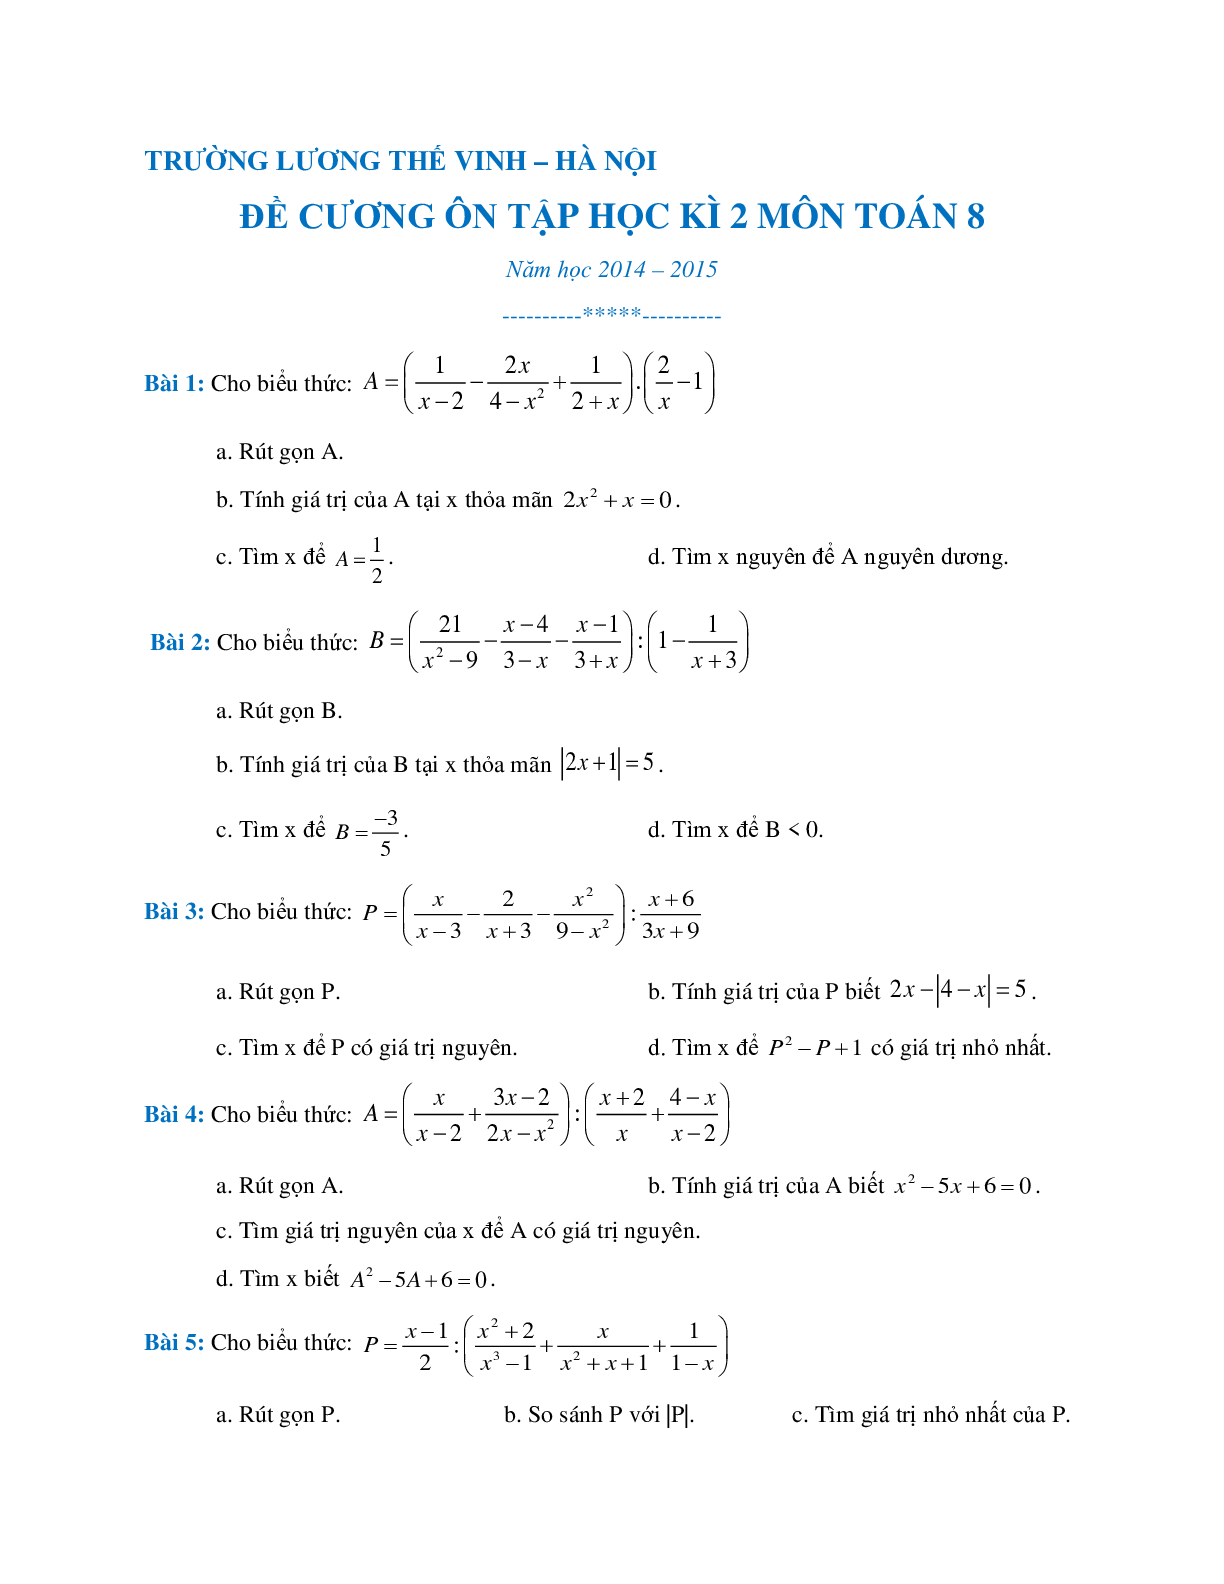 Đề cương học kì 2 môn toán lớp 9 (trang 1)